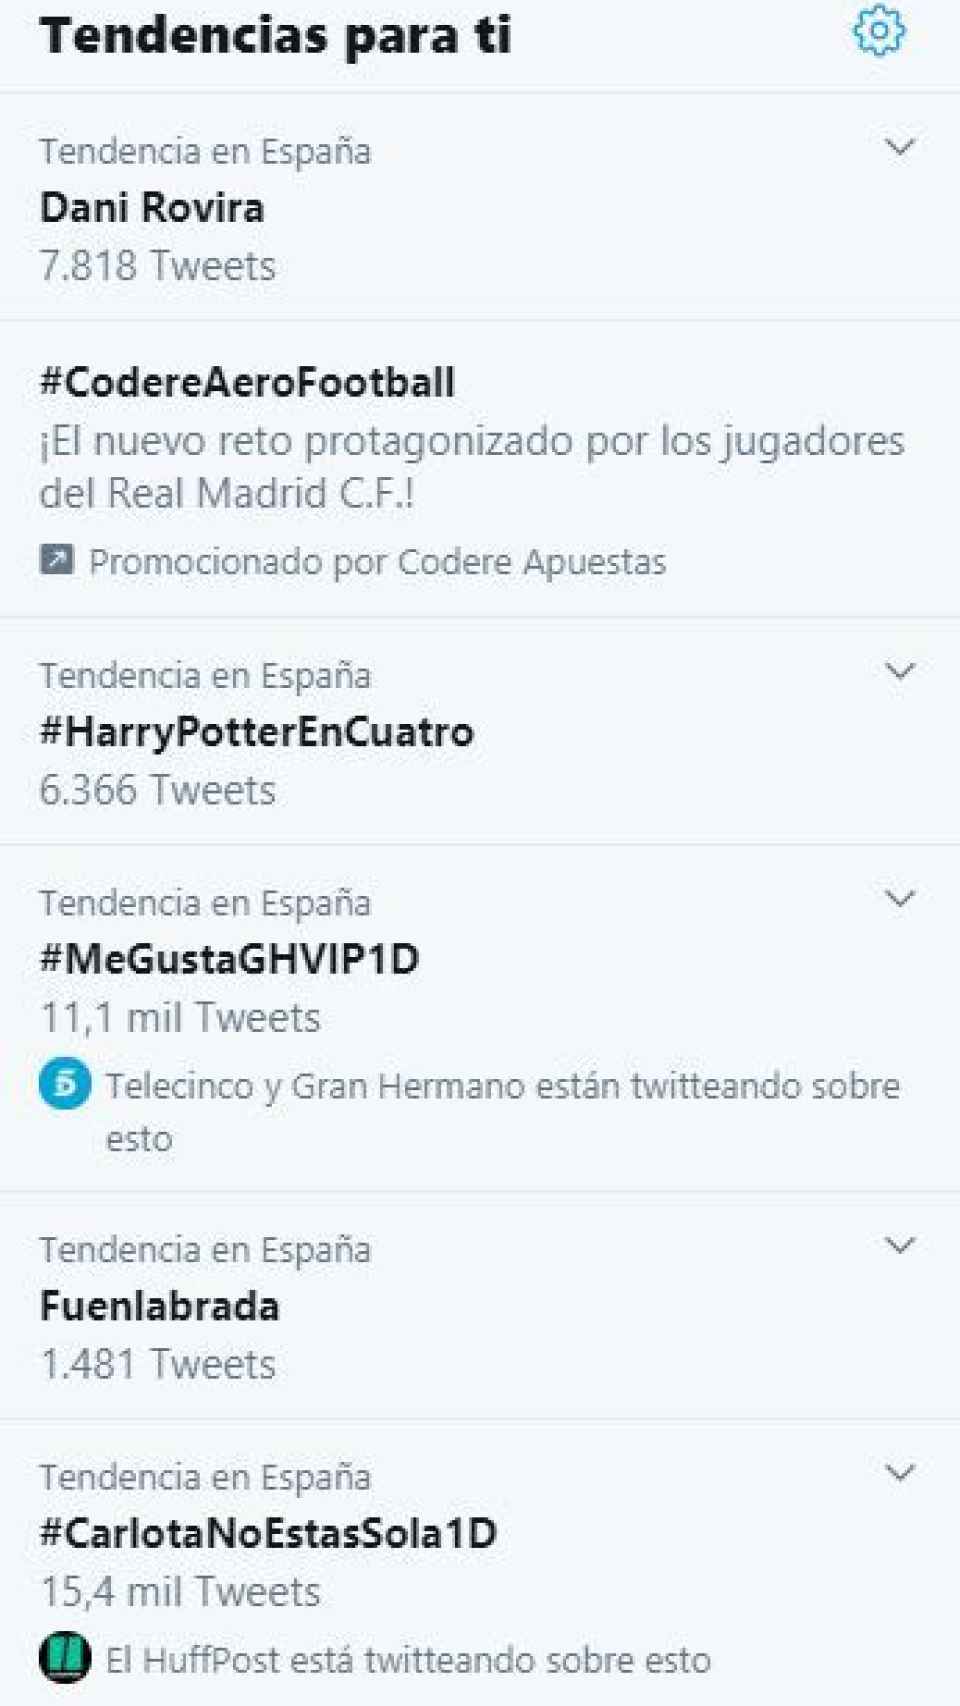 Ranking de Tendencias en Twitter en España.